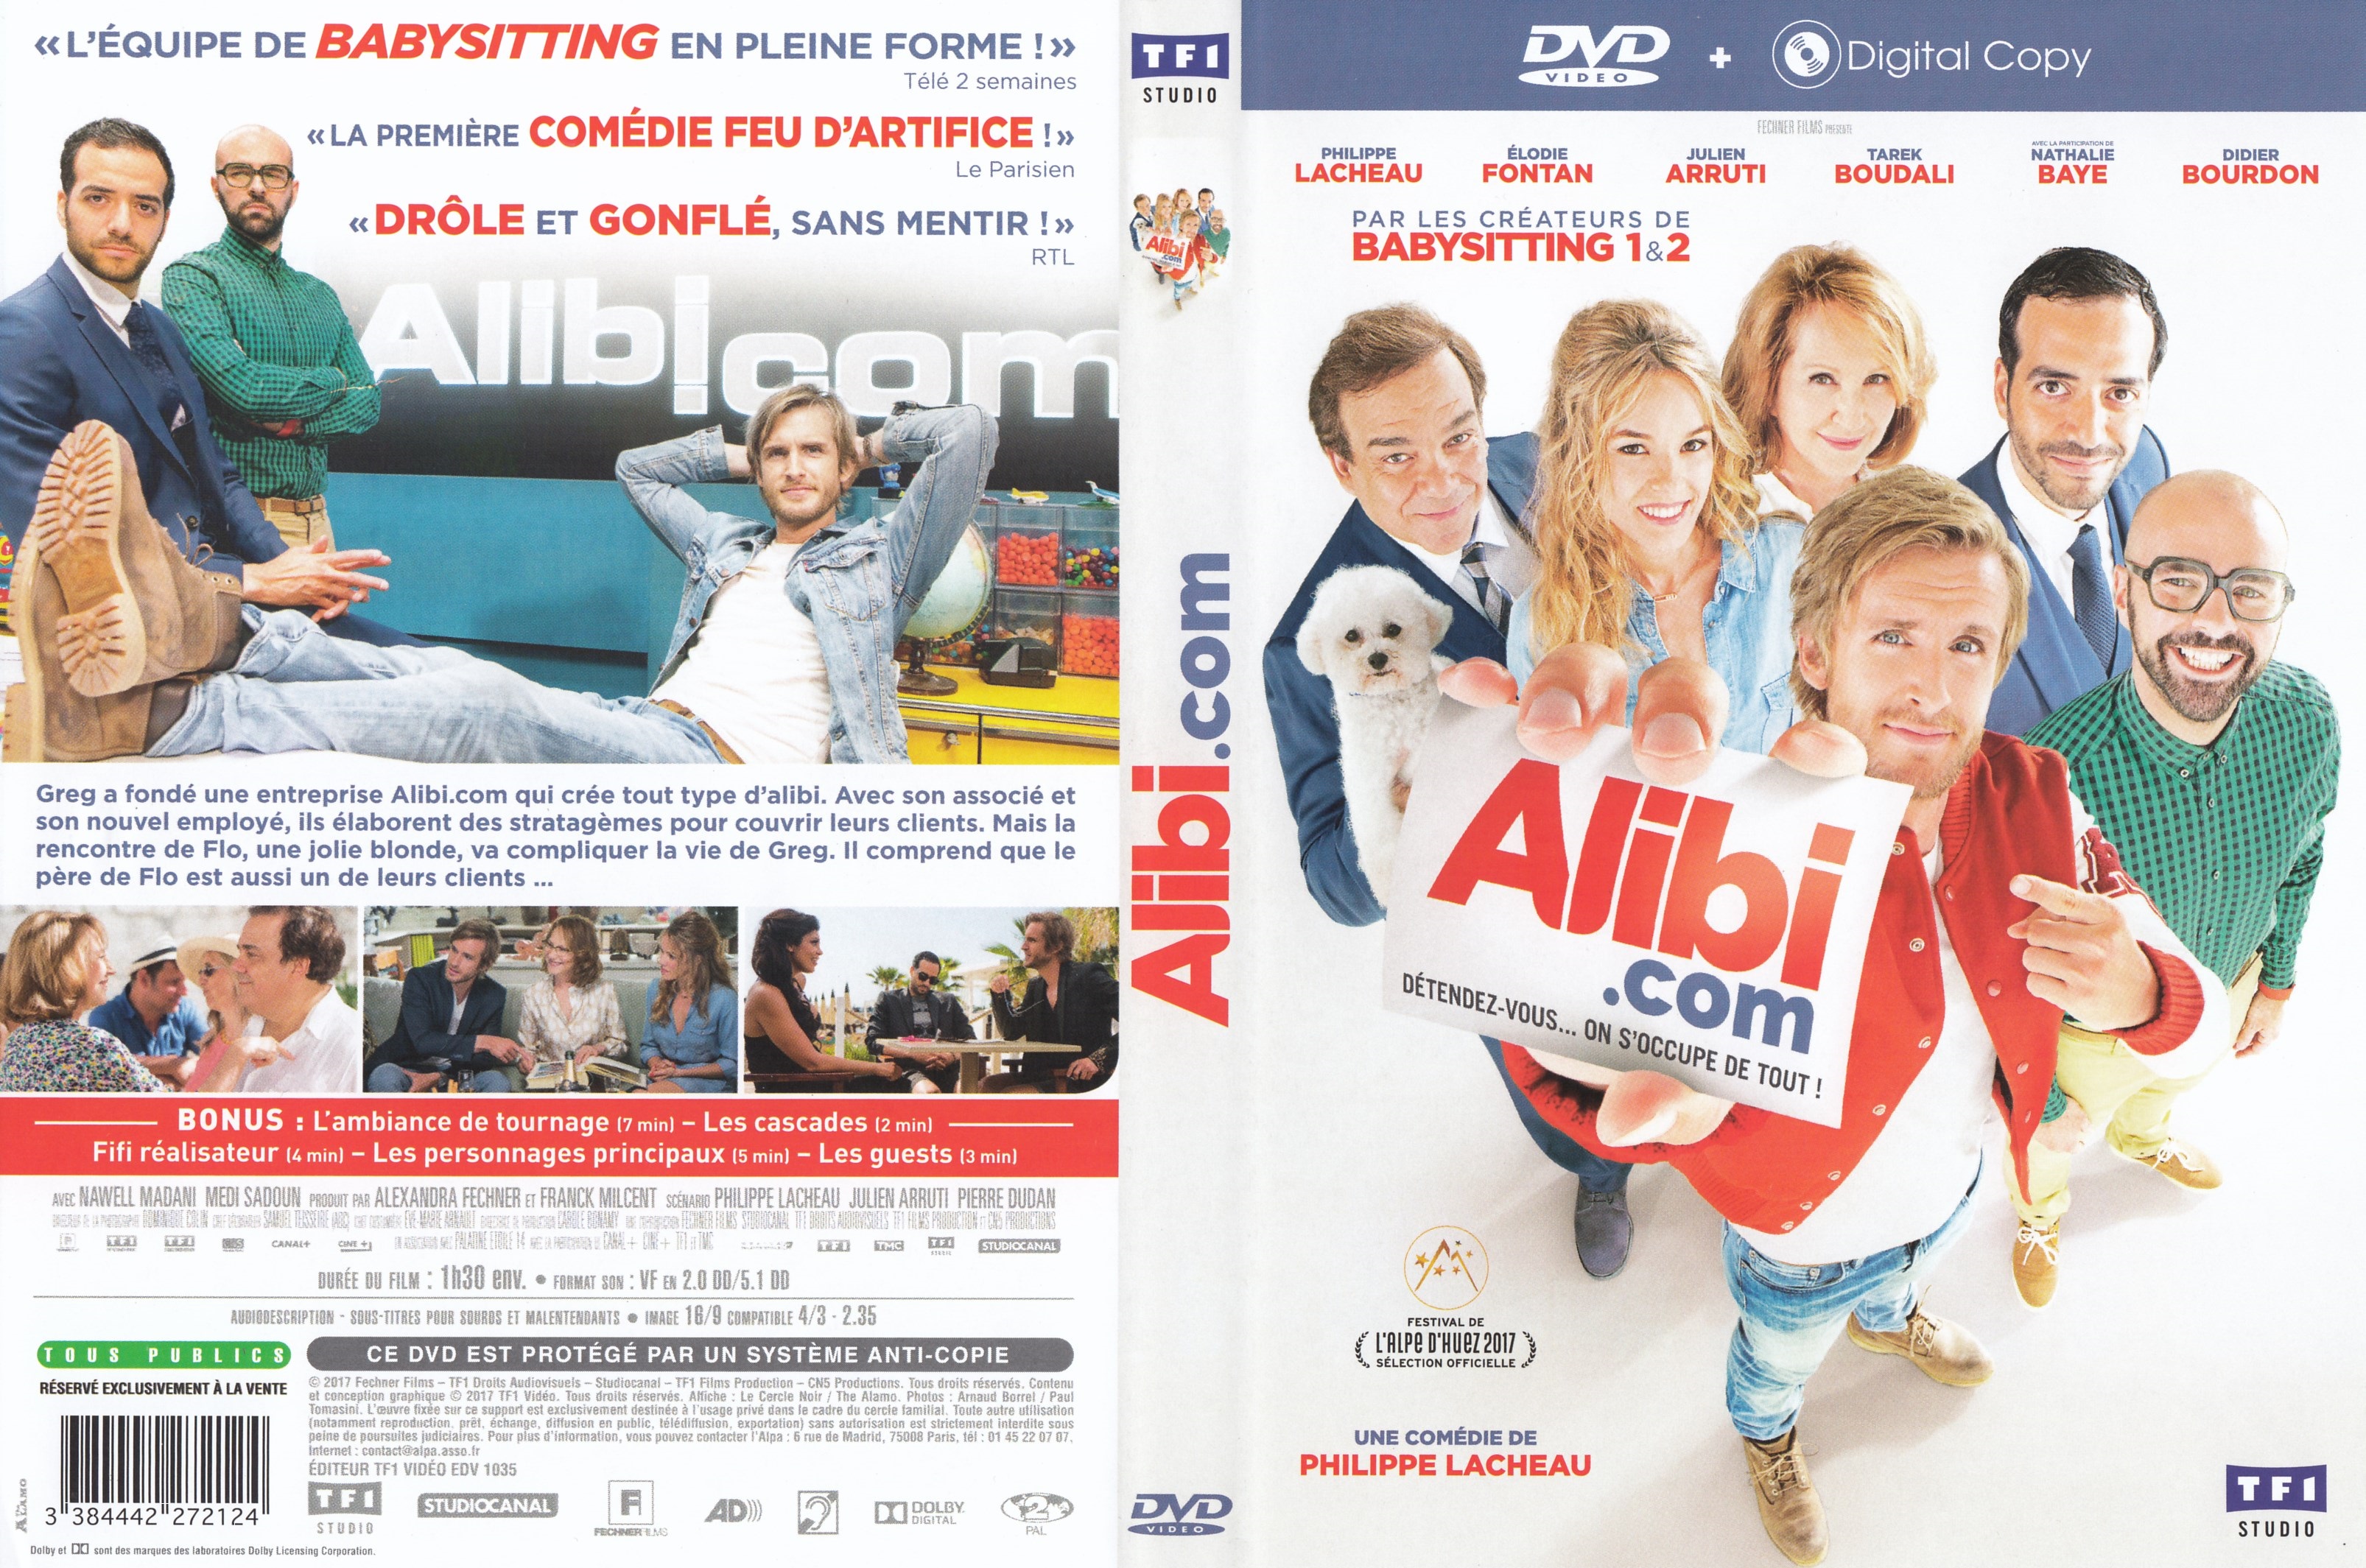 Jaquette DVD Alibi.com